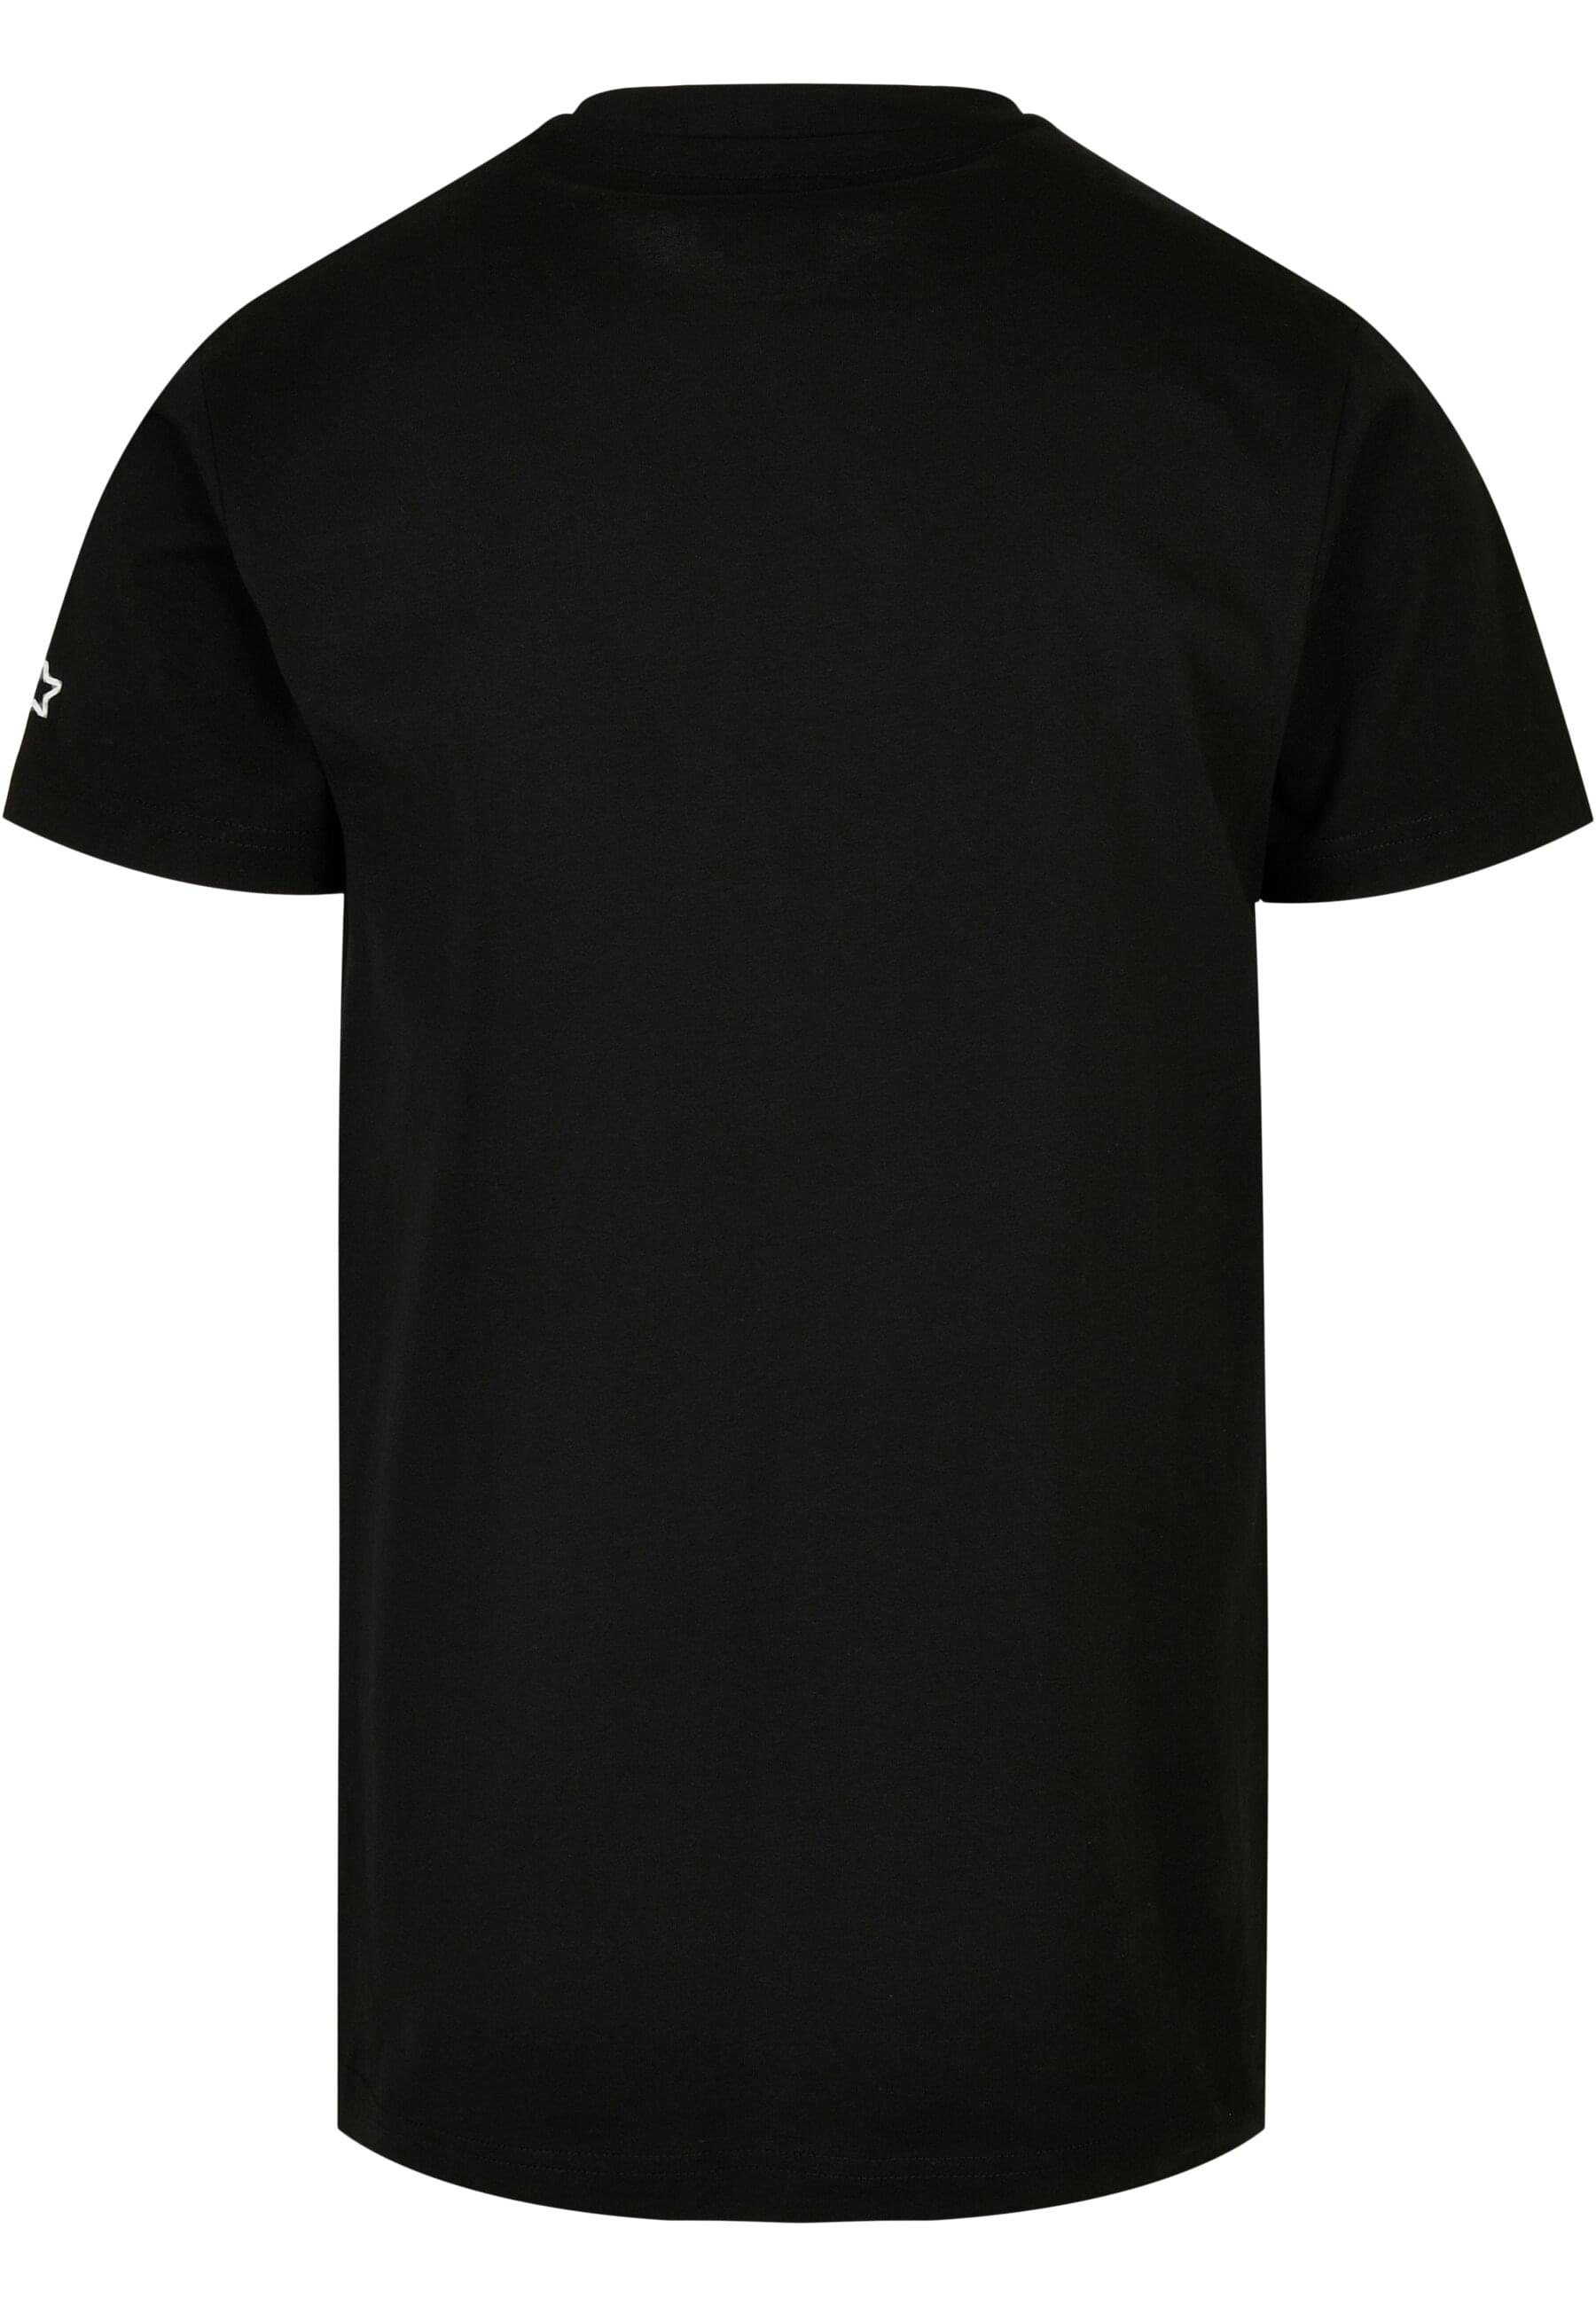 (1-tlg) Starter Logo black T-Shirt Herren Starter Tee